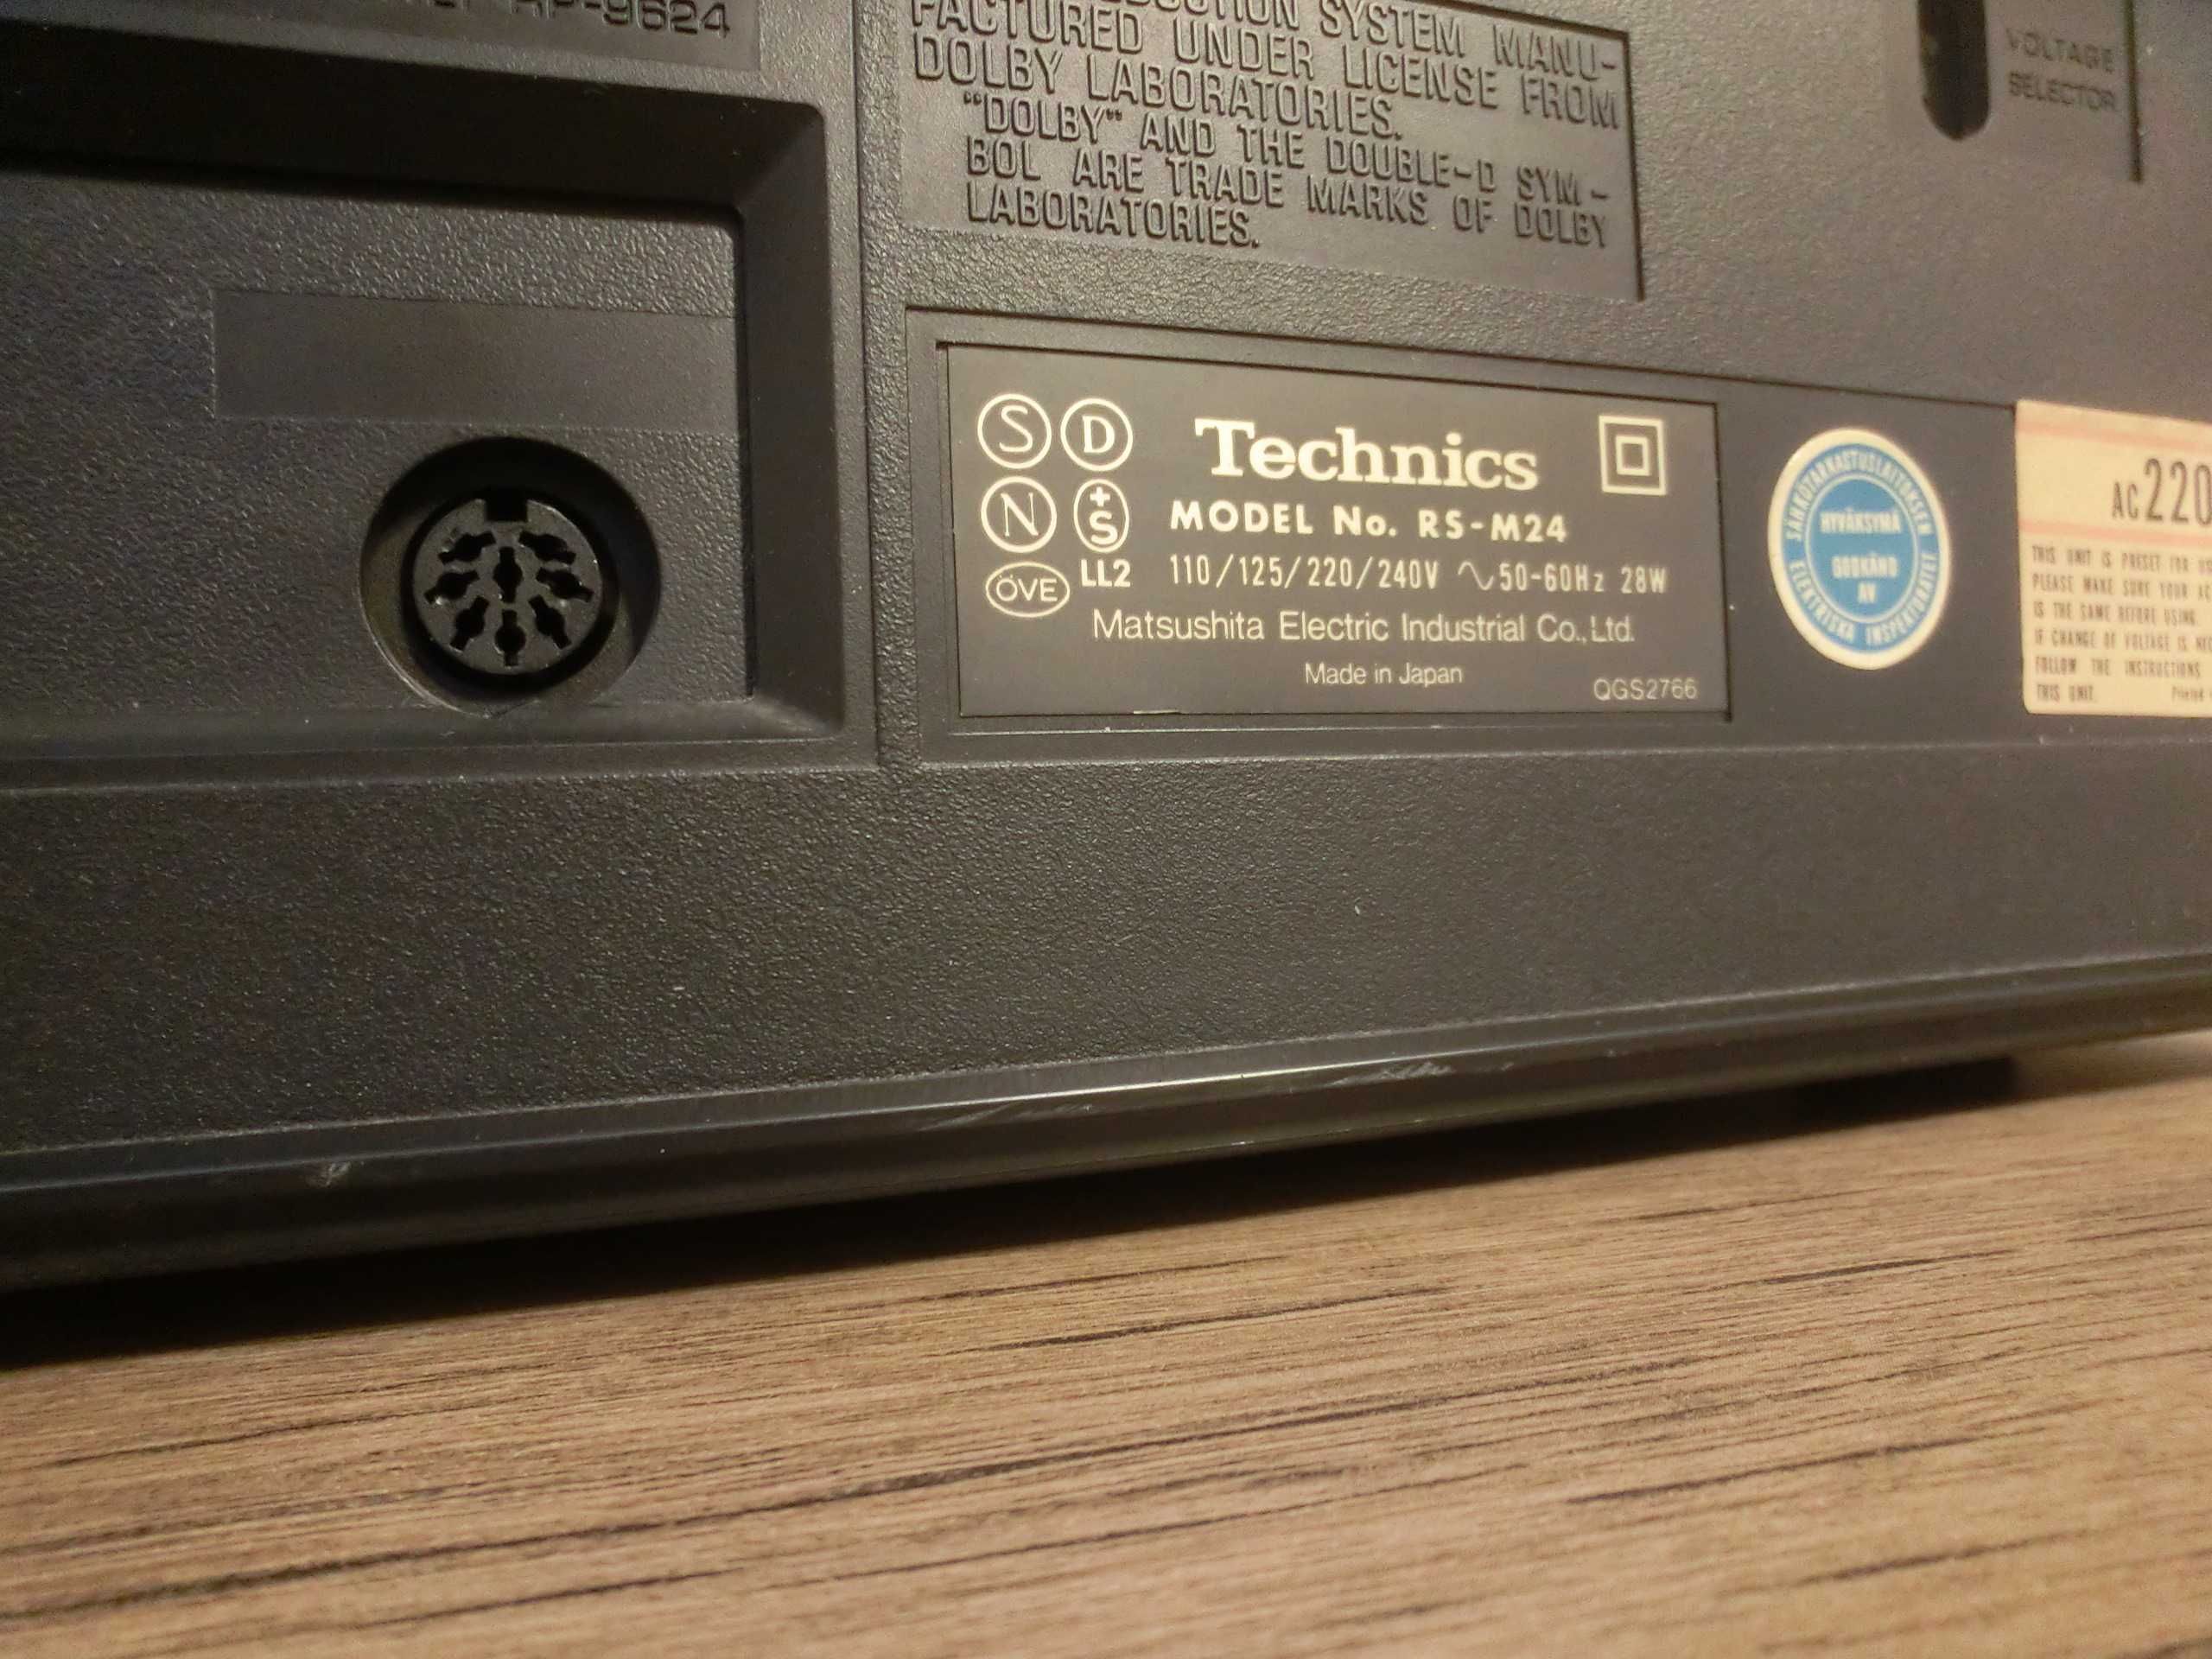 Technics M24 Vintage casette deck perfect functional.